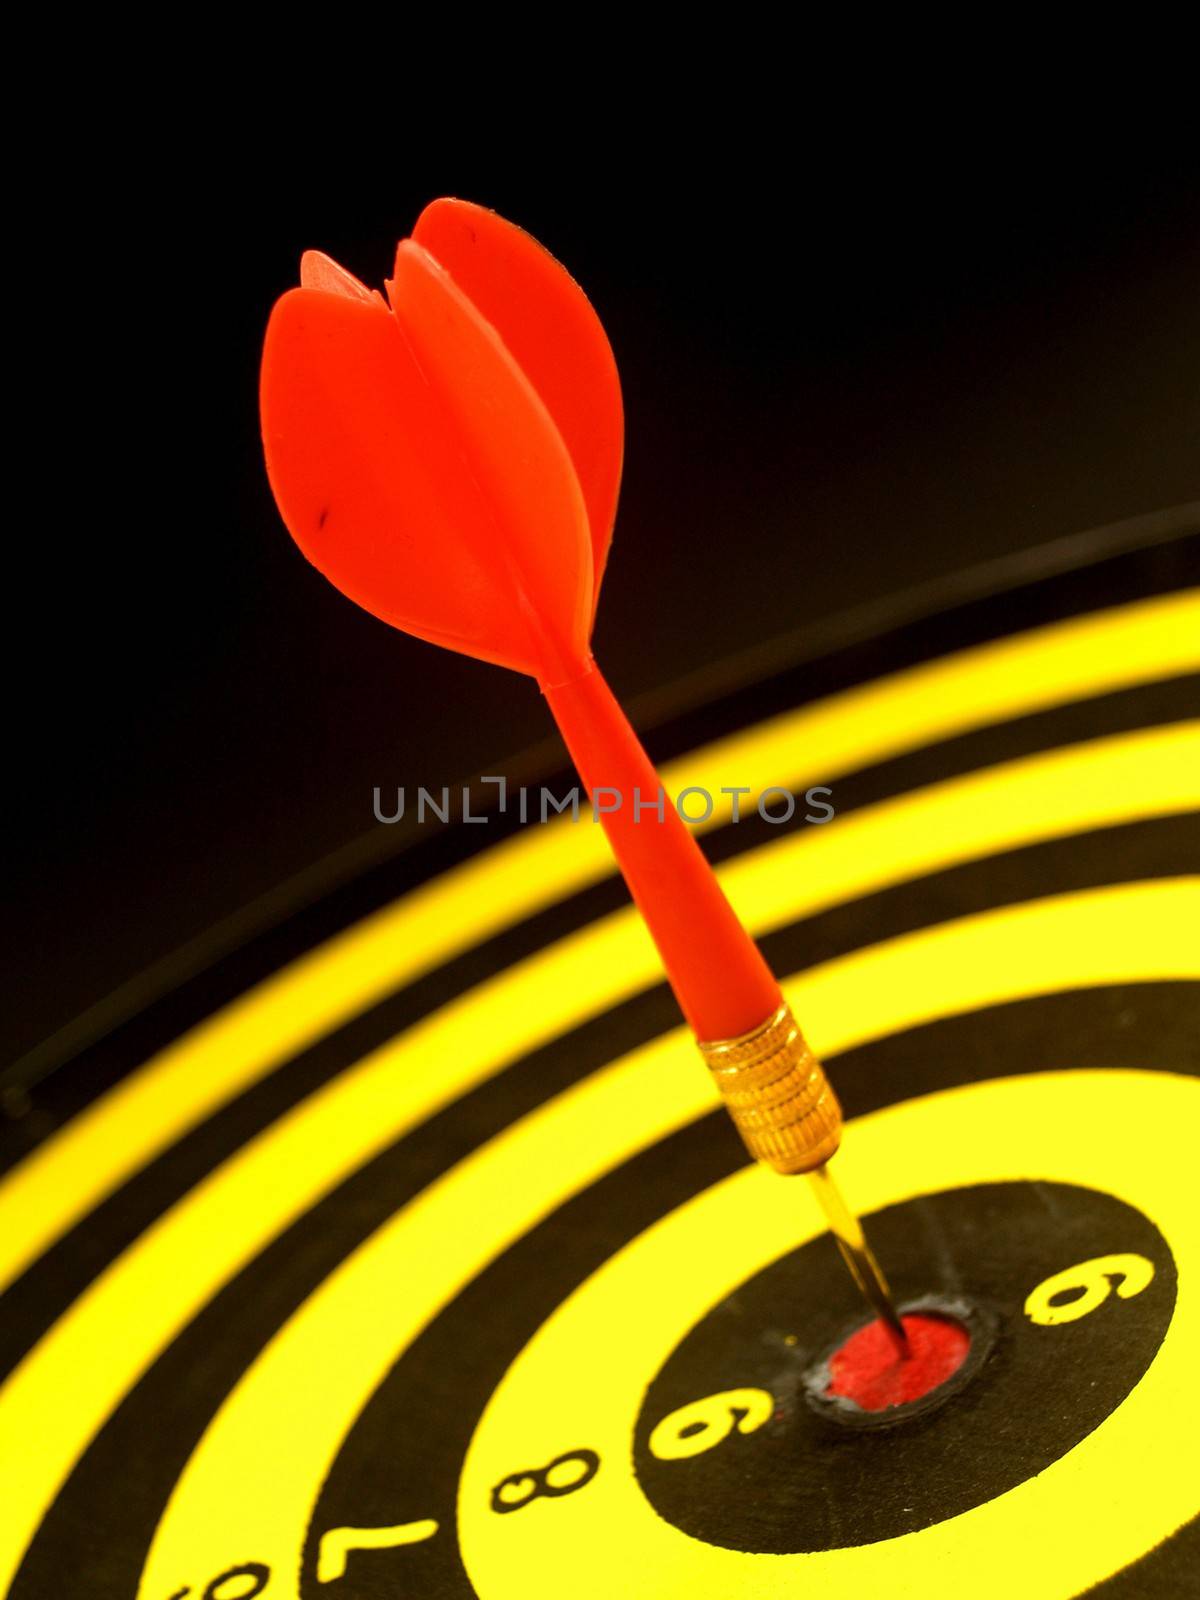 dartboard darts arrows in the target  by kiddaikiddee